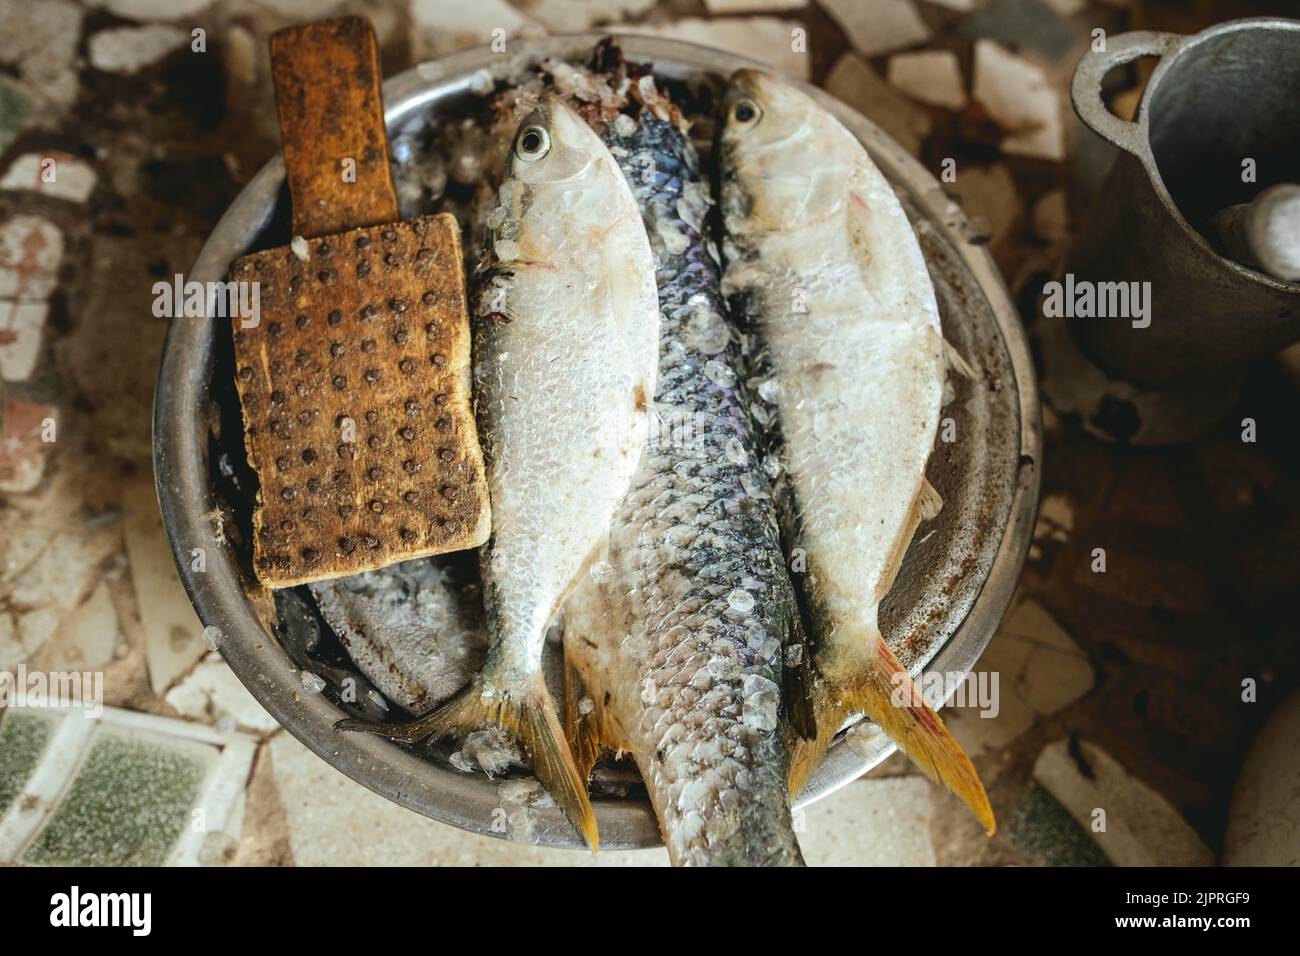 Preparare il cibo per la famiglia, riso con pesce, il piatto tradizionale dei pescatori e degli abitanti della regione costiera, Nouamghar, Mauritania Foto Stock